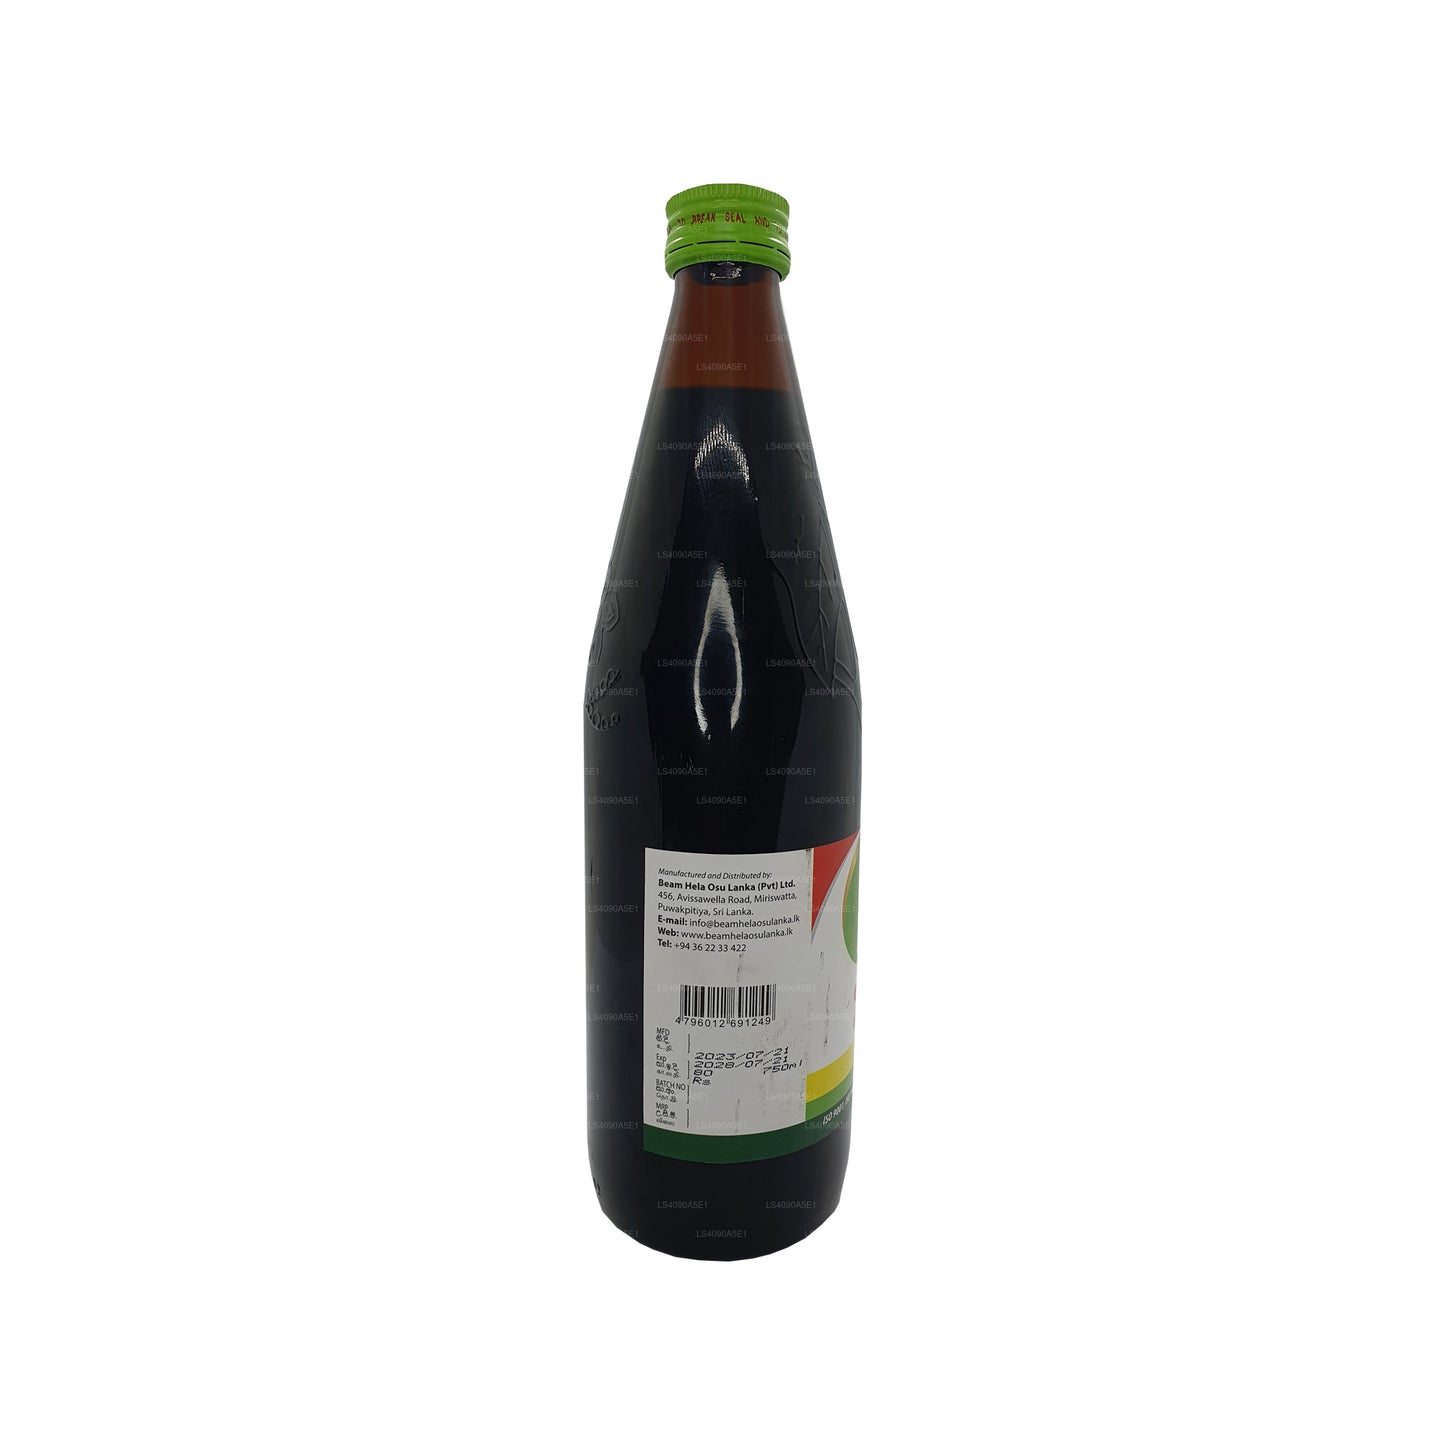 Beam Shoolahara olie (30 ml)